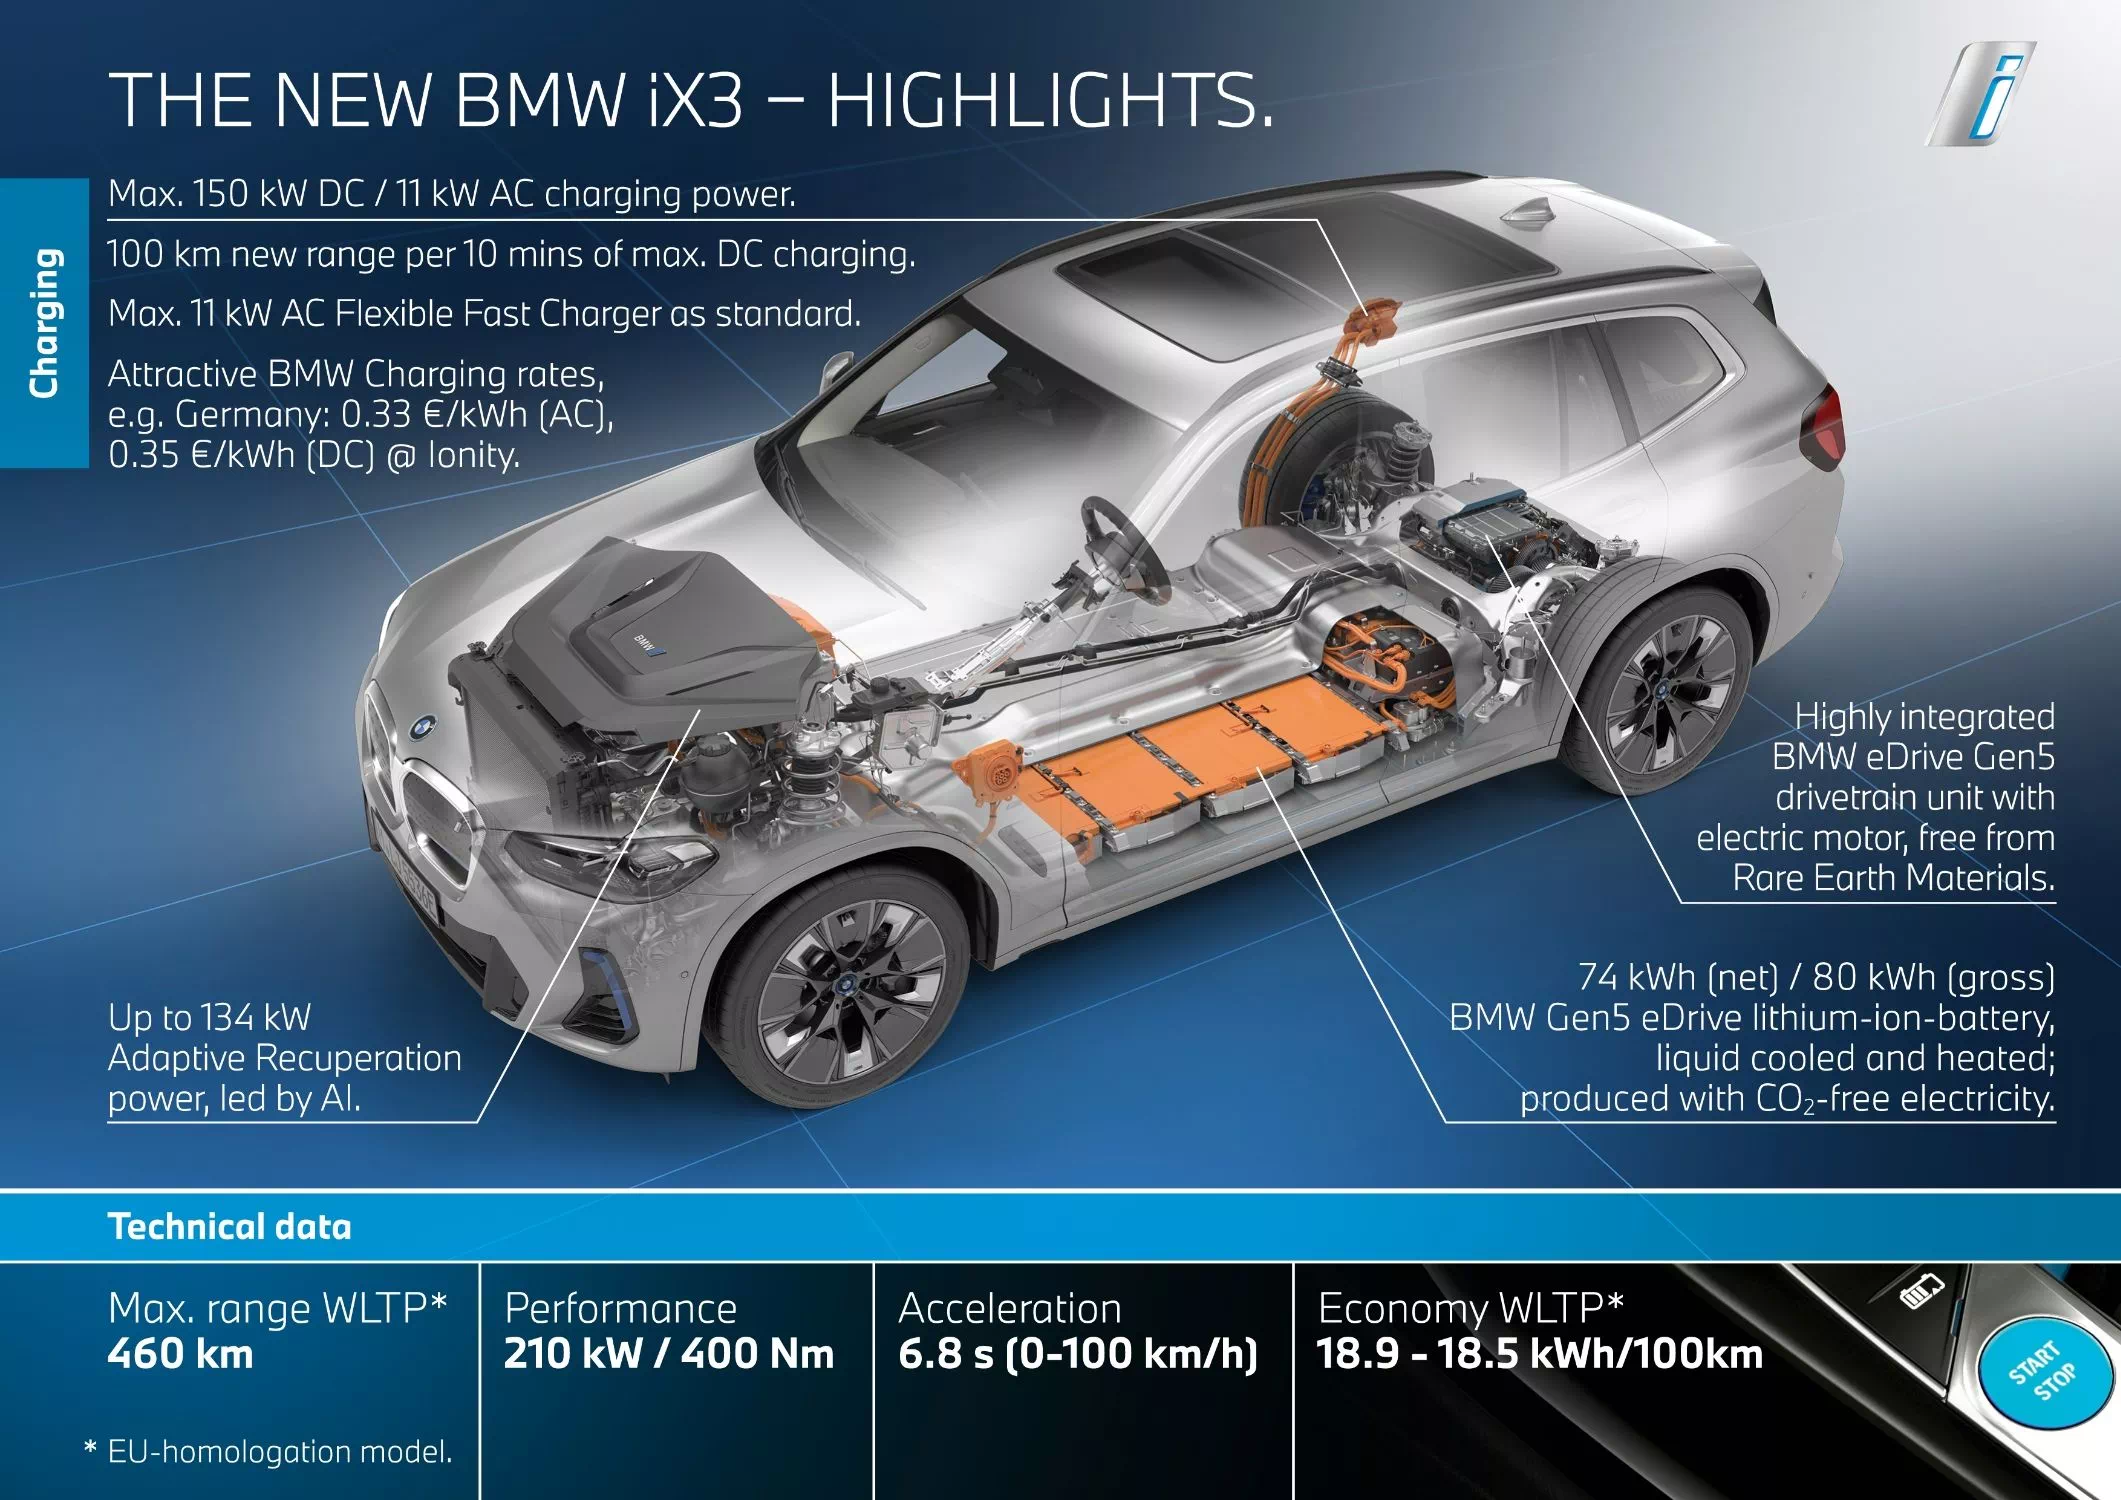 더 뉴 BMW iX3 파워트레인에 관한 주요 설명입니다.